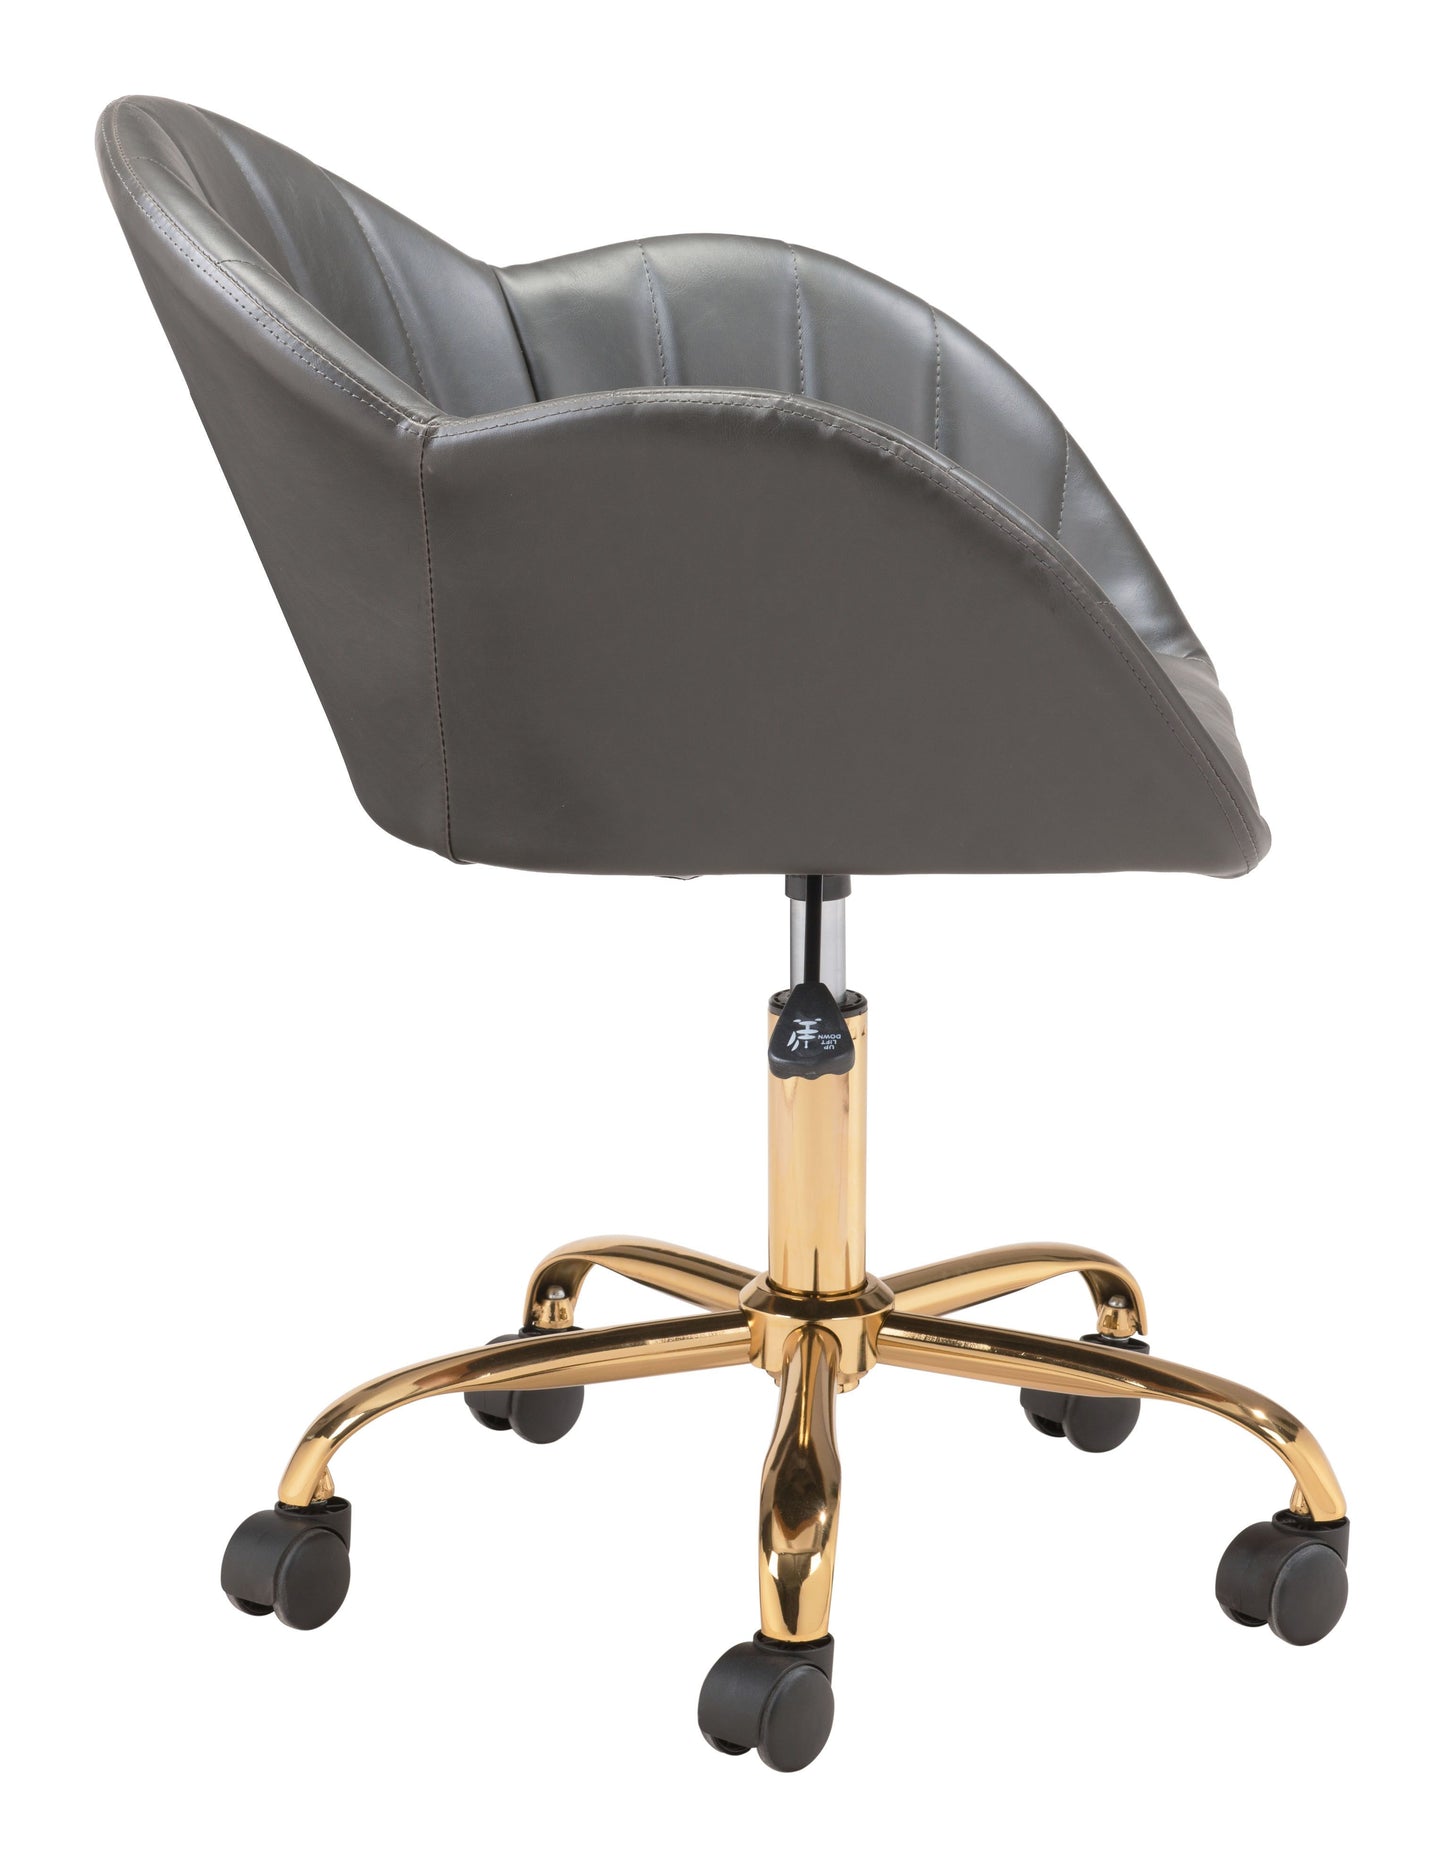 Sagart Office Chair Gray